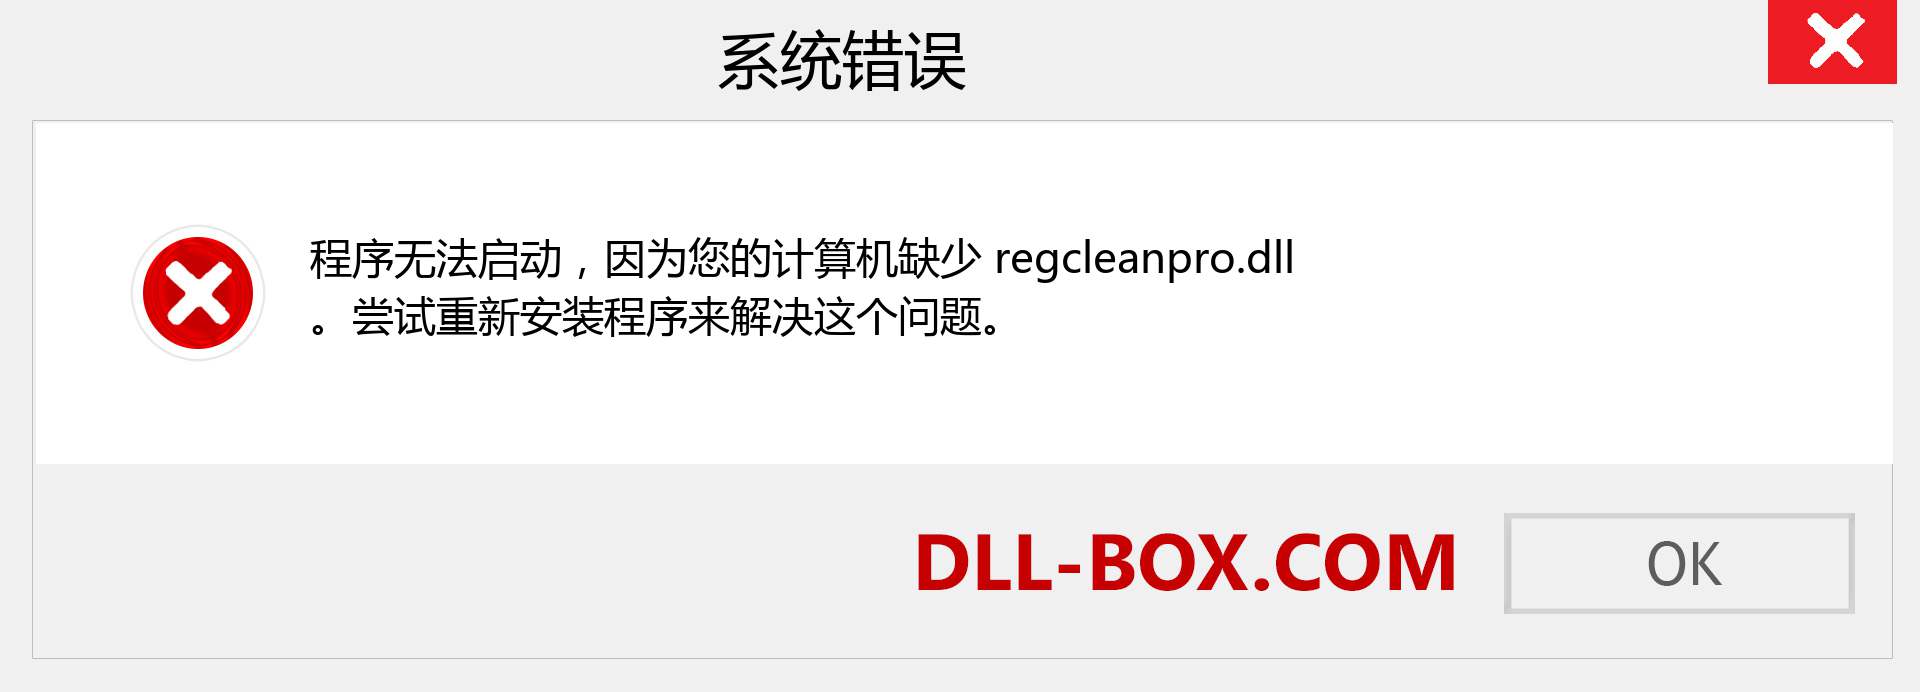 regcleanpro.dll 文件丢失？。 适用于 Windows 7、8、10 的下载 - 修复 Windows、照片、图像上的 regcleanpro dll 丢失错误